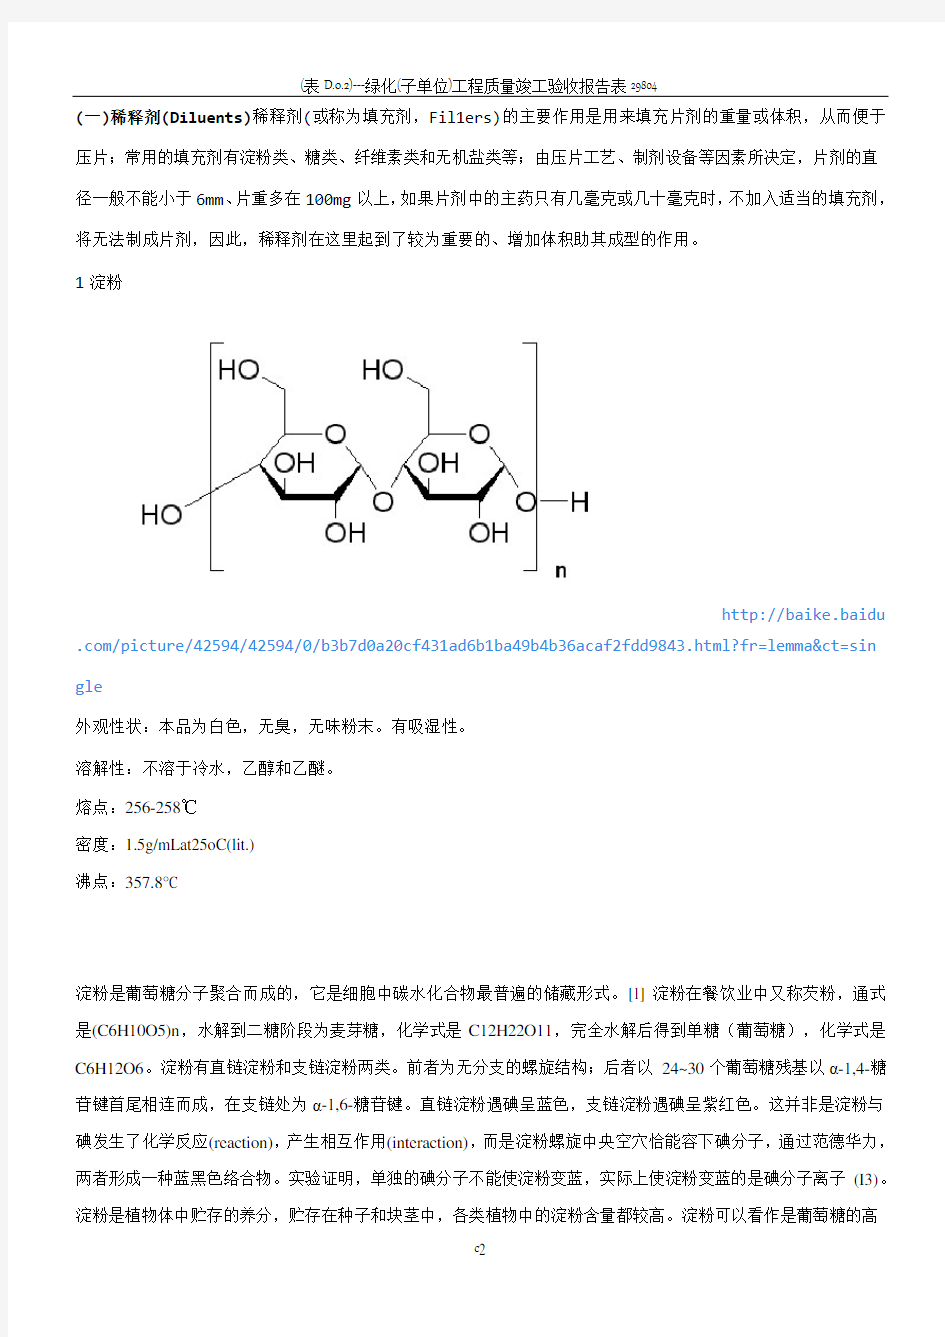 固体制剂常用辅料总结